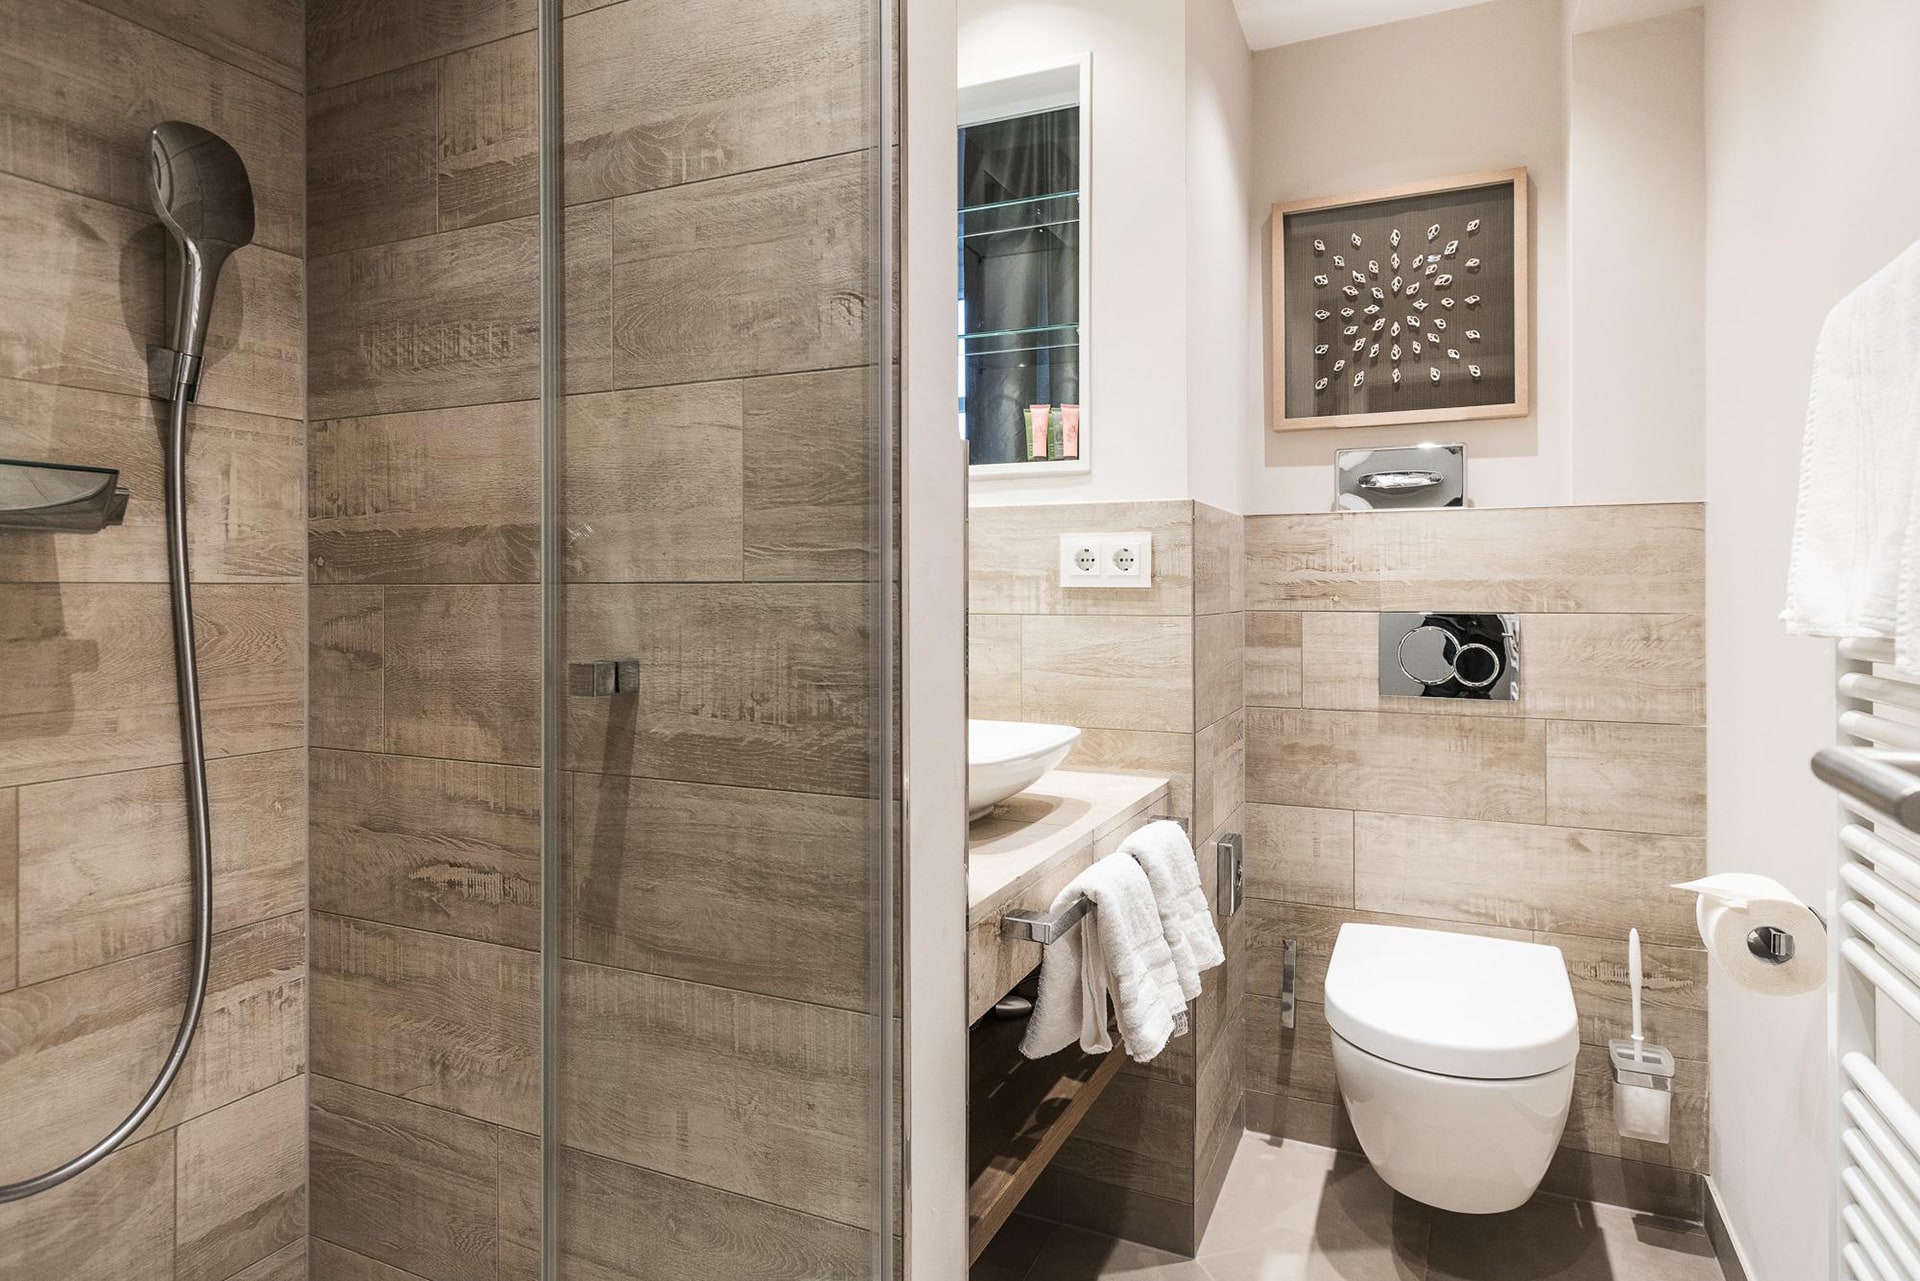 Modernes Badezimmer mit Dusche im Doppelzimmer im Hotel Landhaus Sylter Hahn in Westerland auf Sylt.